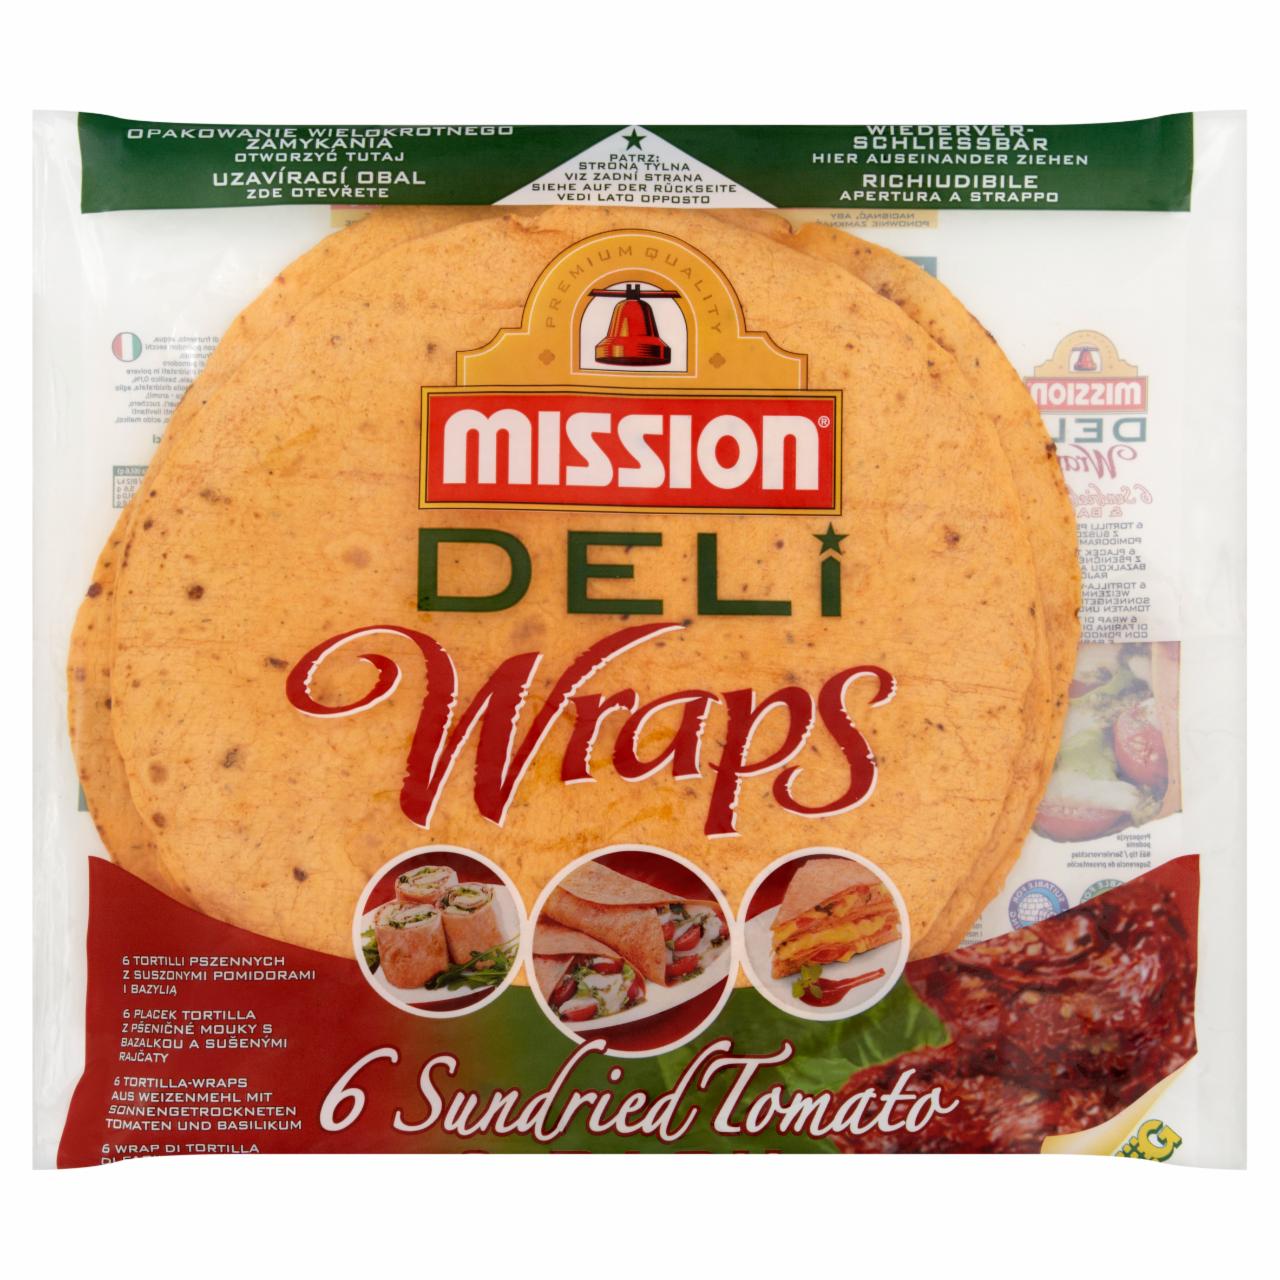 Zdjęcia - Mission Deli Wraps Tortilla pszenna z suszonymi pomidorami i bazylią 370 g (6 sztuk)